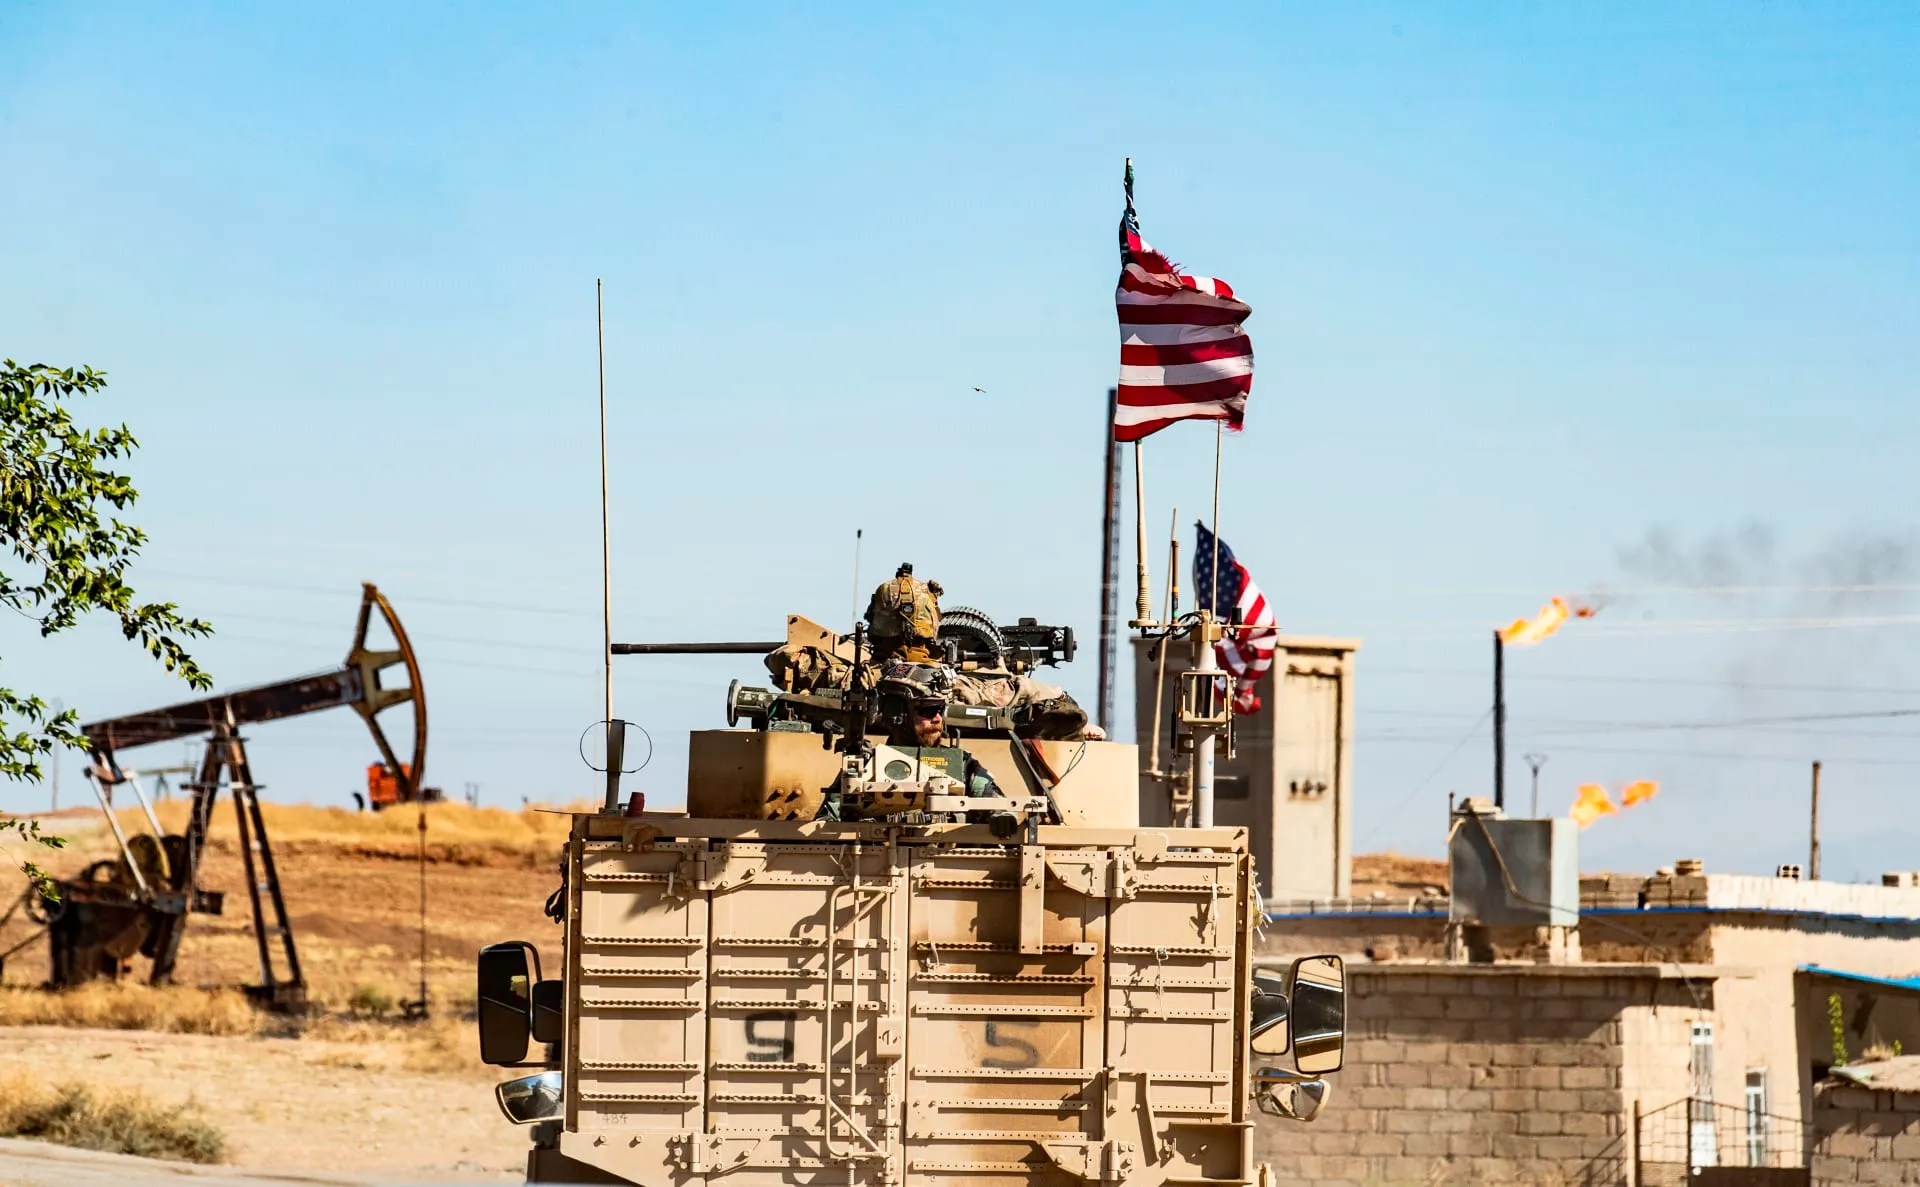 خارجية النظام تتهم واشنطن بمواصلة قرصنتها في "سرقة النفط السوري" باتجاه العراق